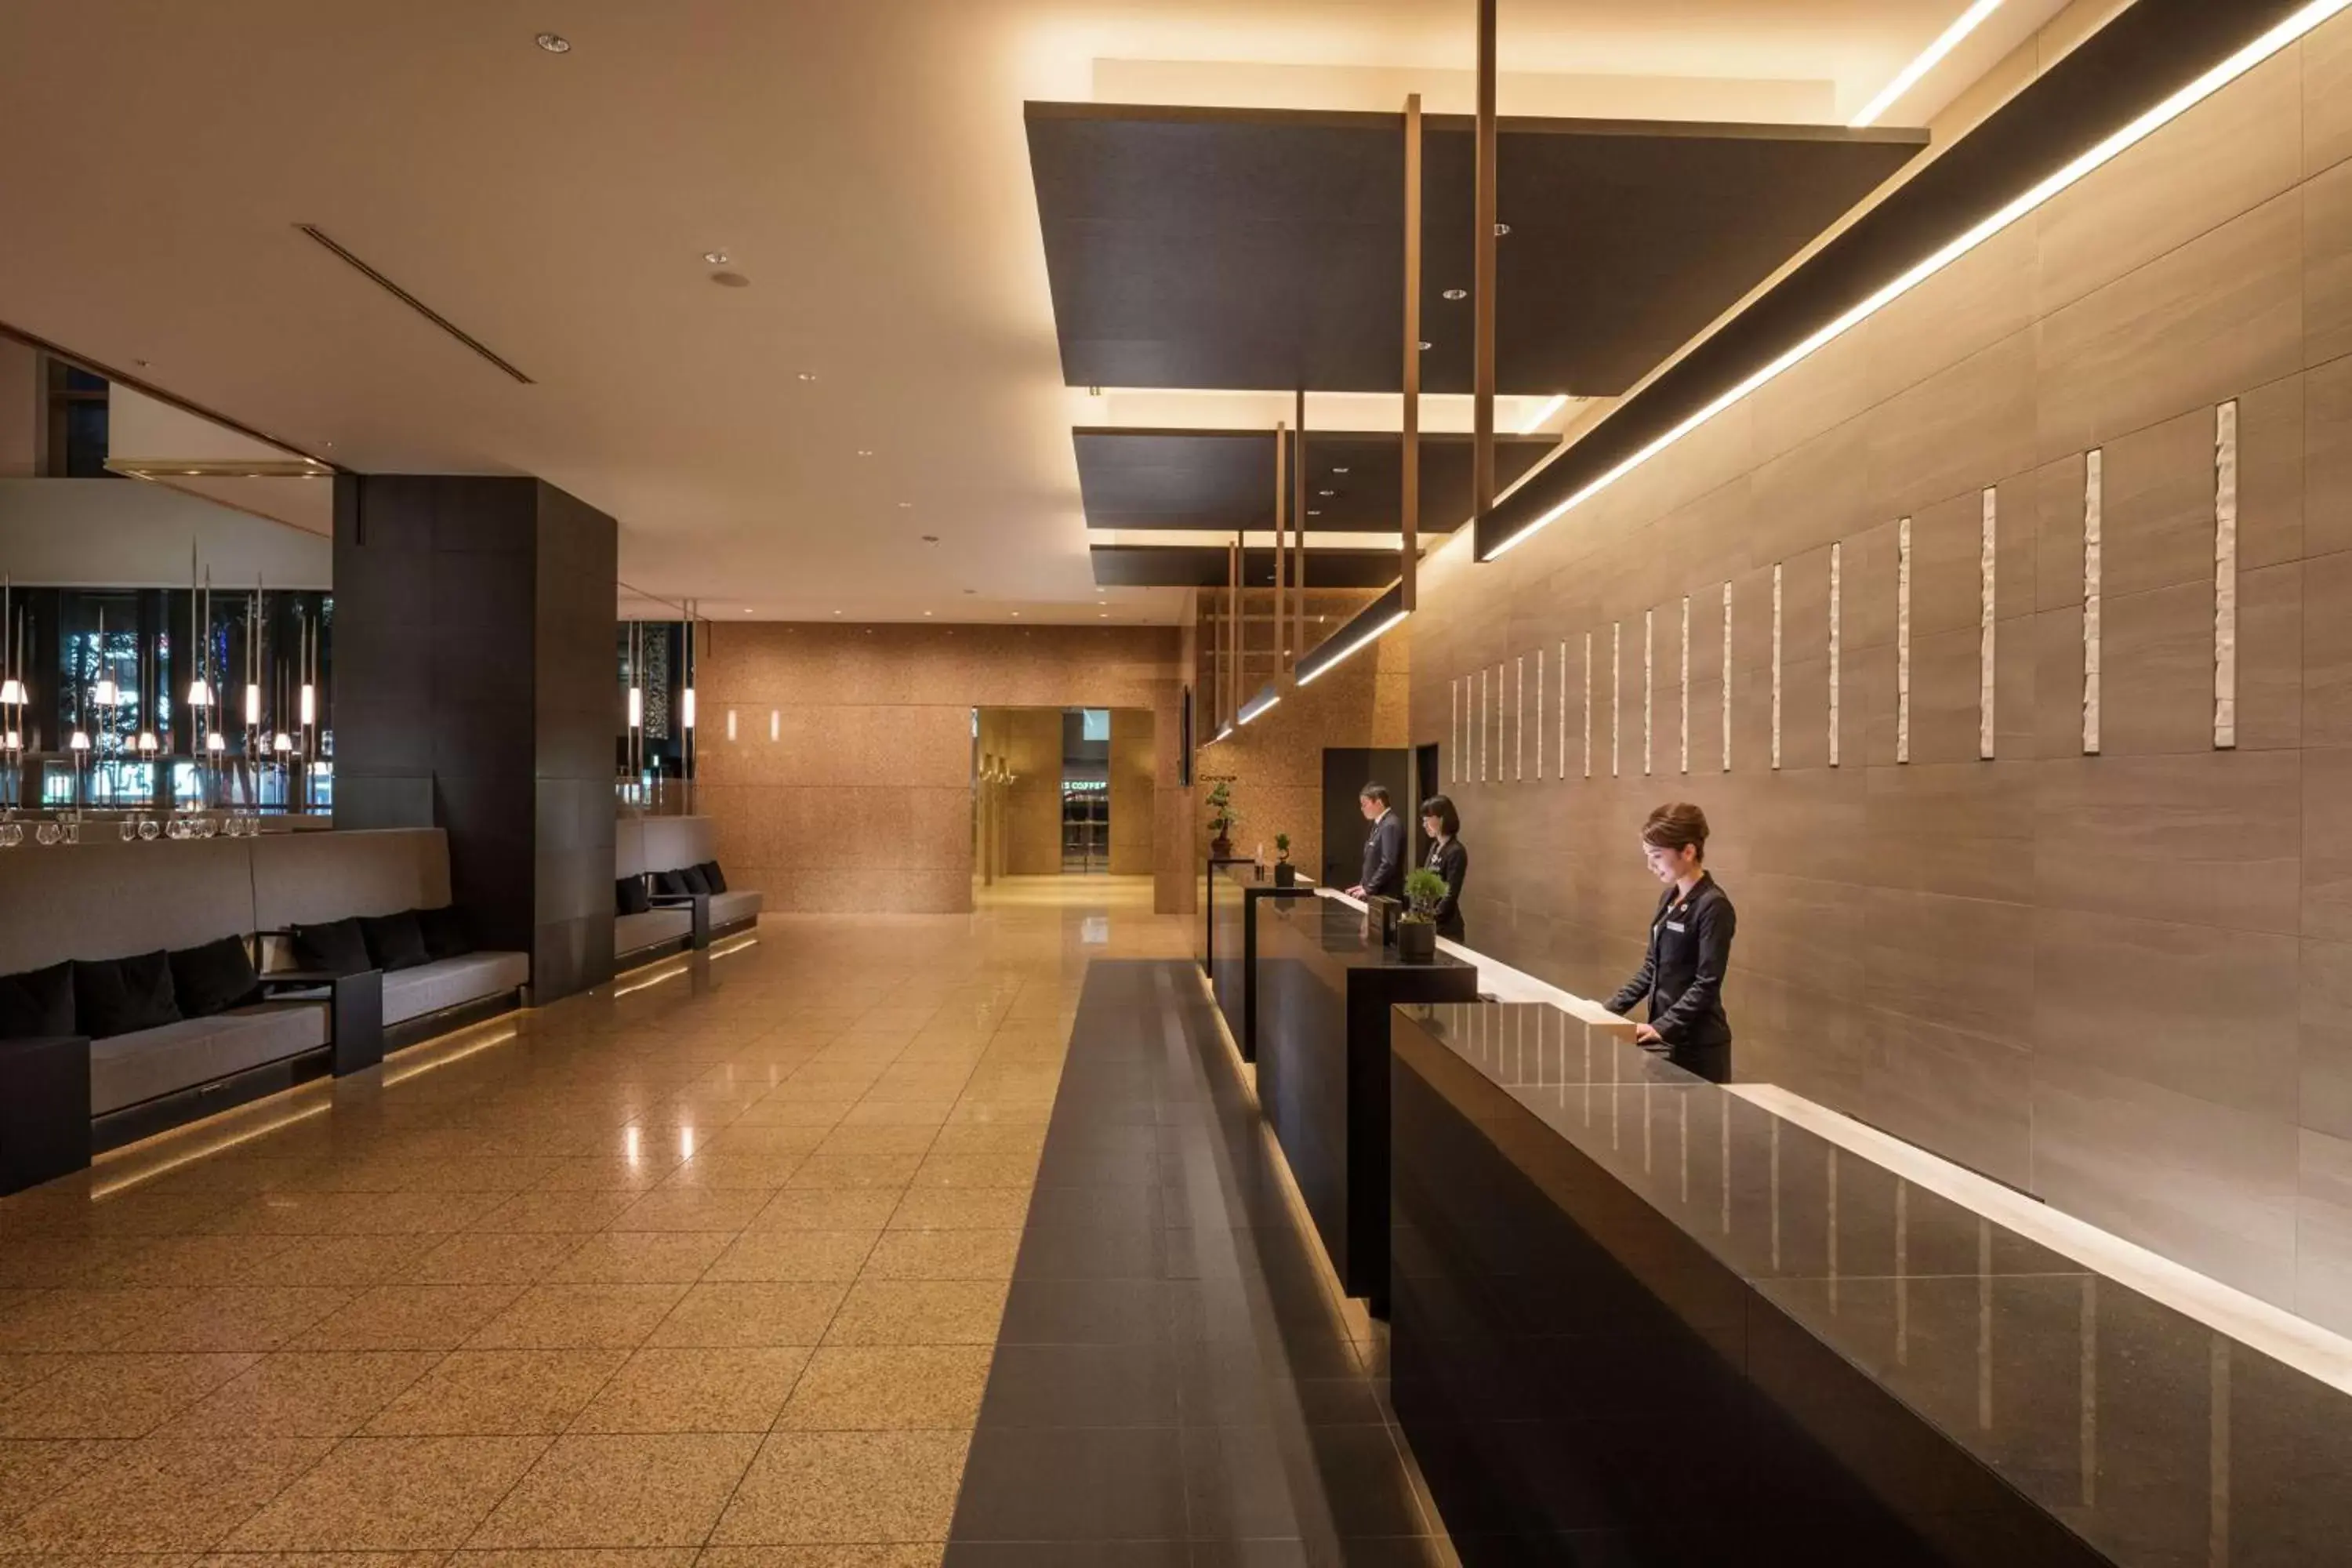 Lobby or reception in Hilton Nagoya Hotel